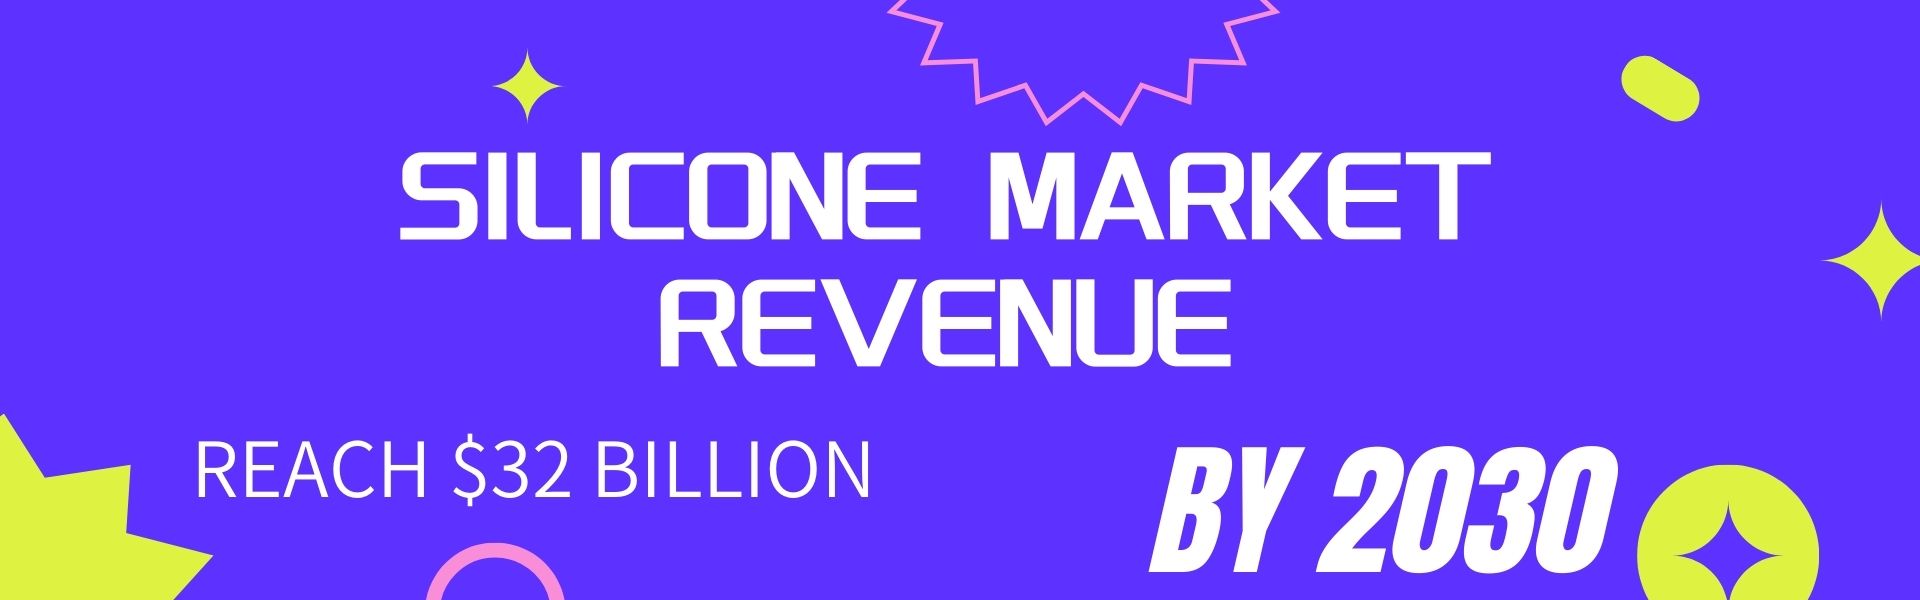 Silicone Market Revenue to Reach $32 Billion by 2030